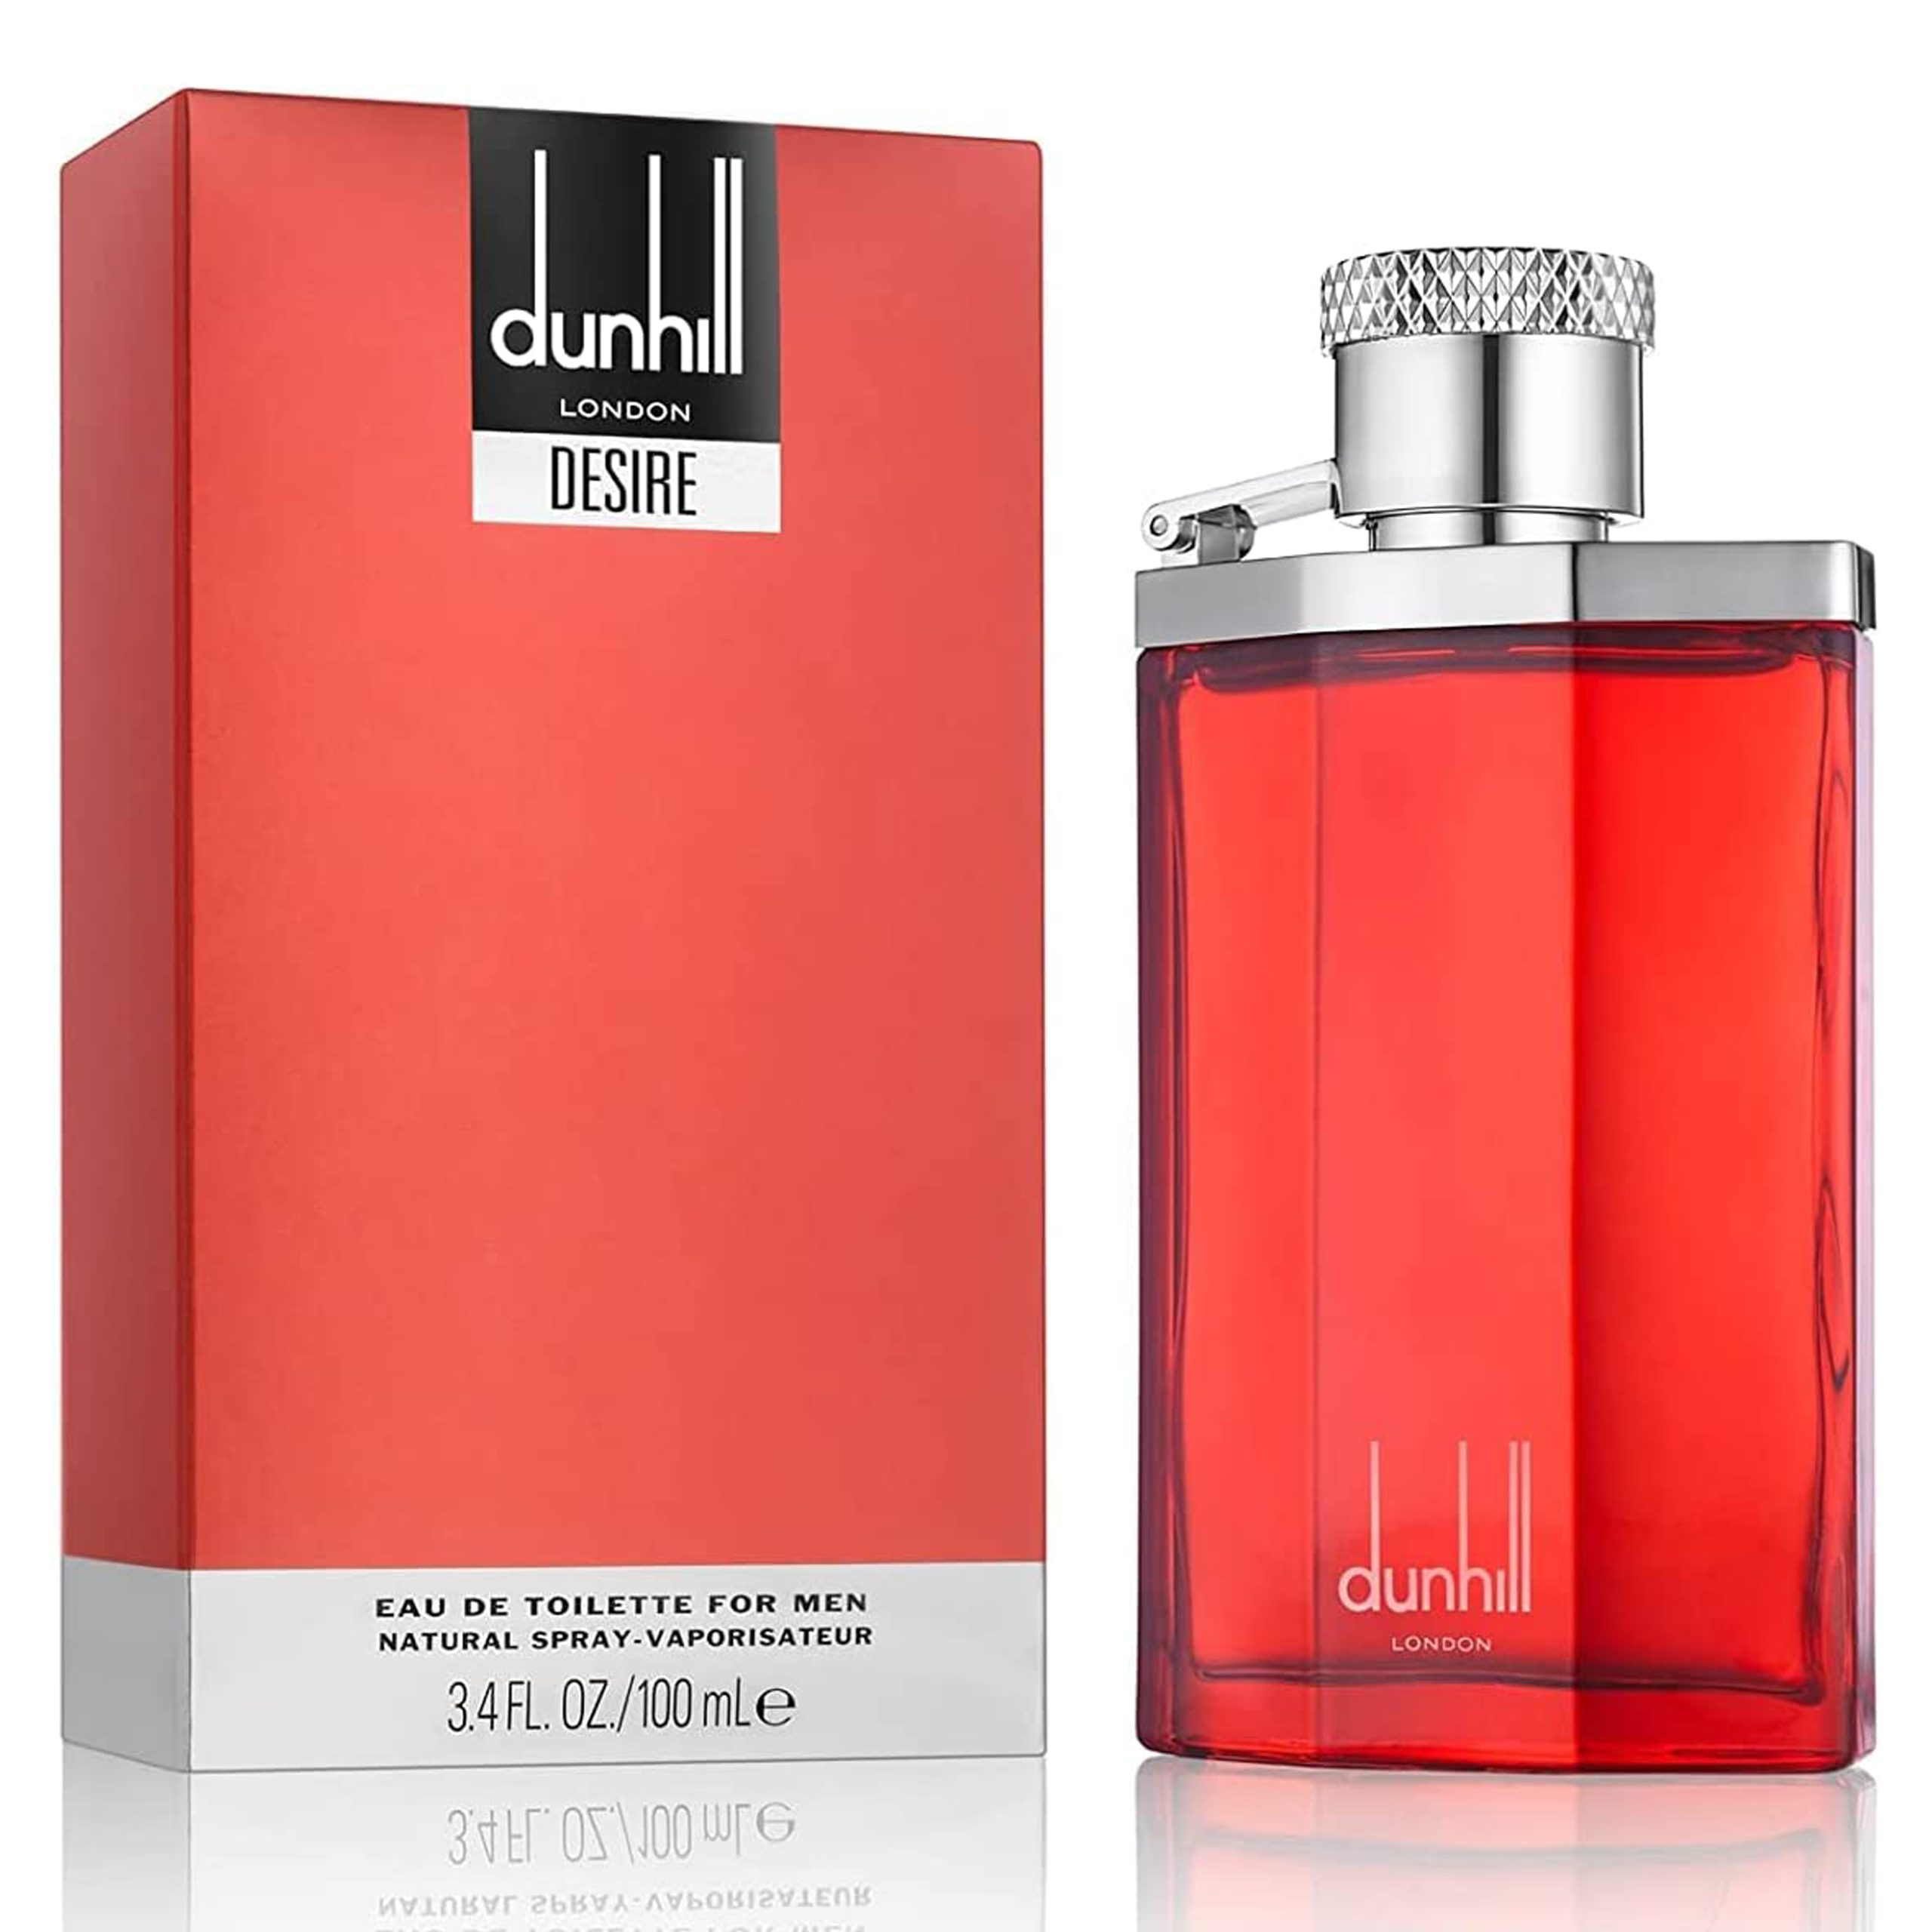 ادکلن مردانه دانهیل دیزایر قرمز Dunhill Desire Red – perfume for men